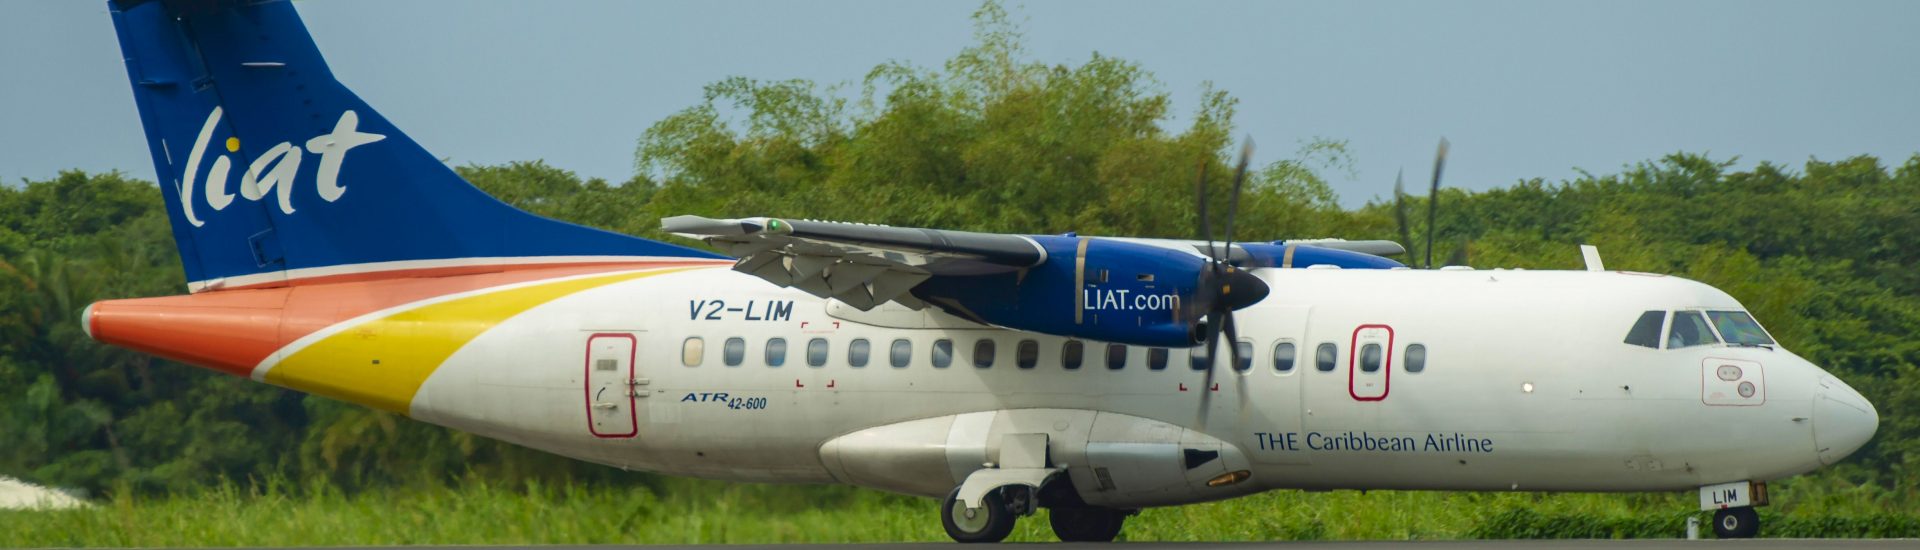 ATR42-600 LIAT V2-LIM